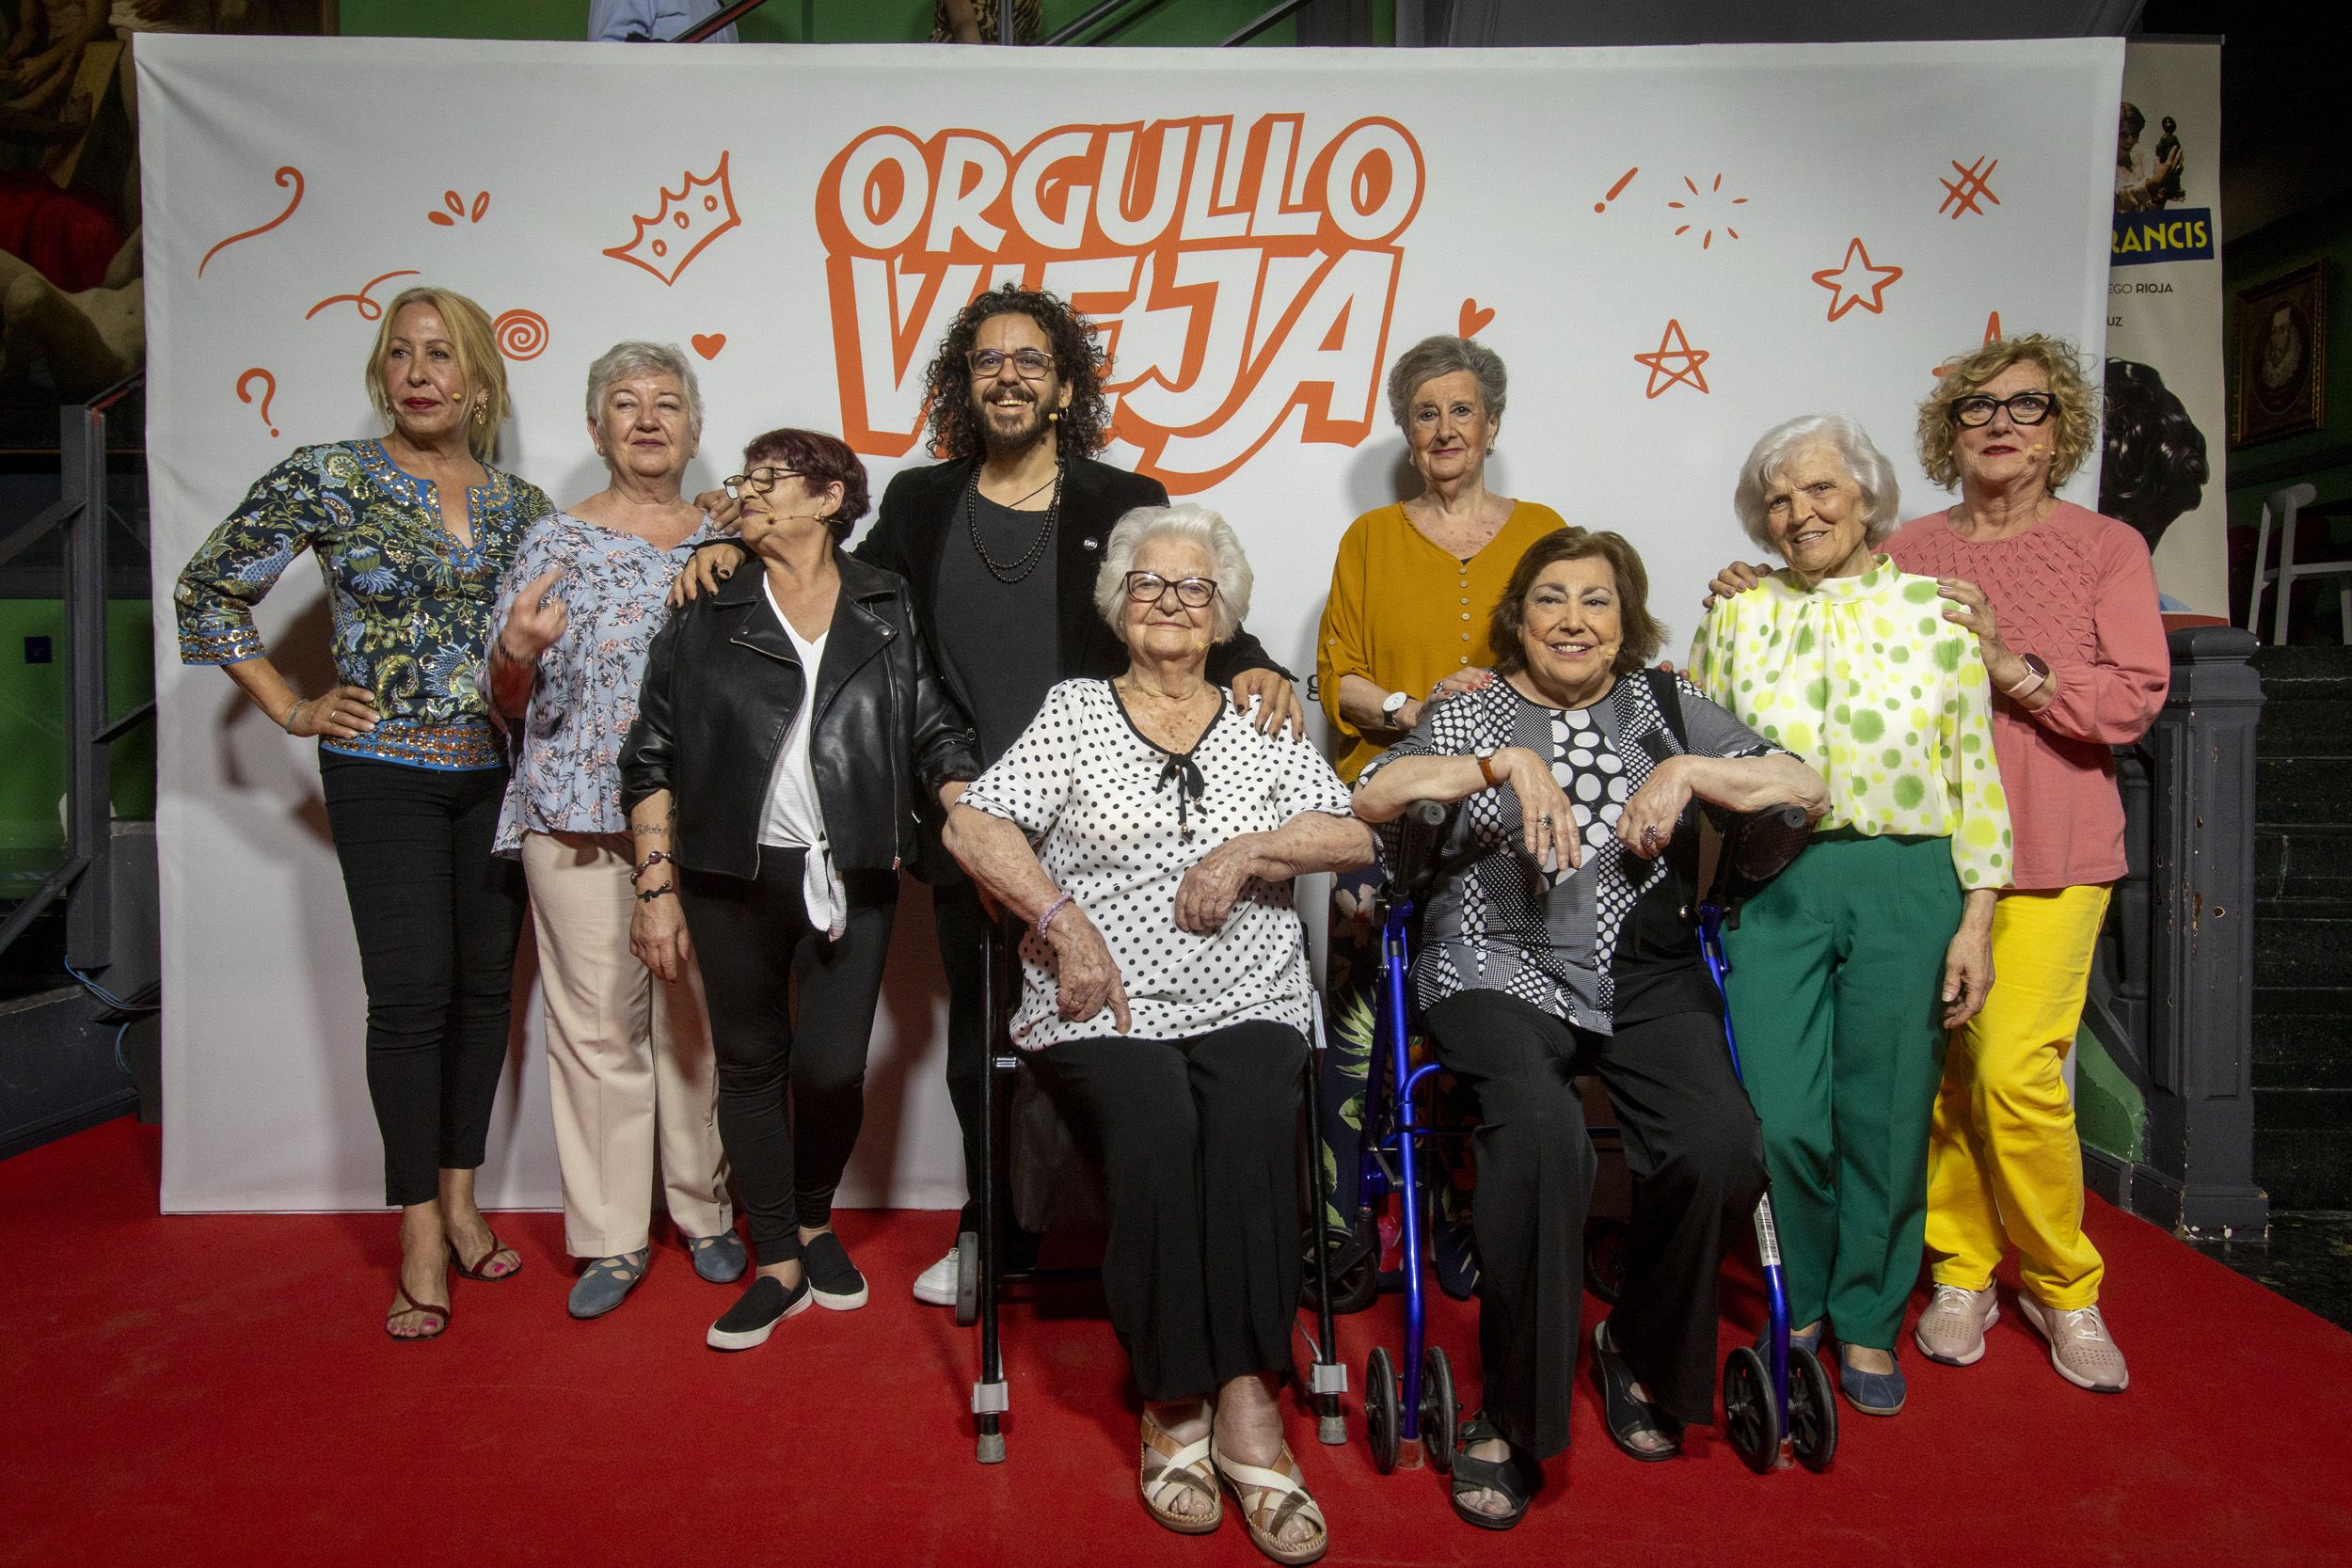 'Orgullo Vieja' llega a Madrid reivindicando con mucho humor que la edad es solo una actitud. Foto: Lolo Vasco (Orgullo Vieja)